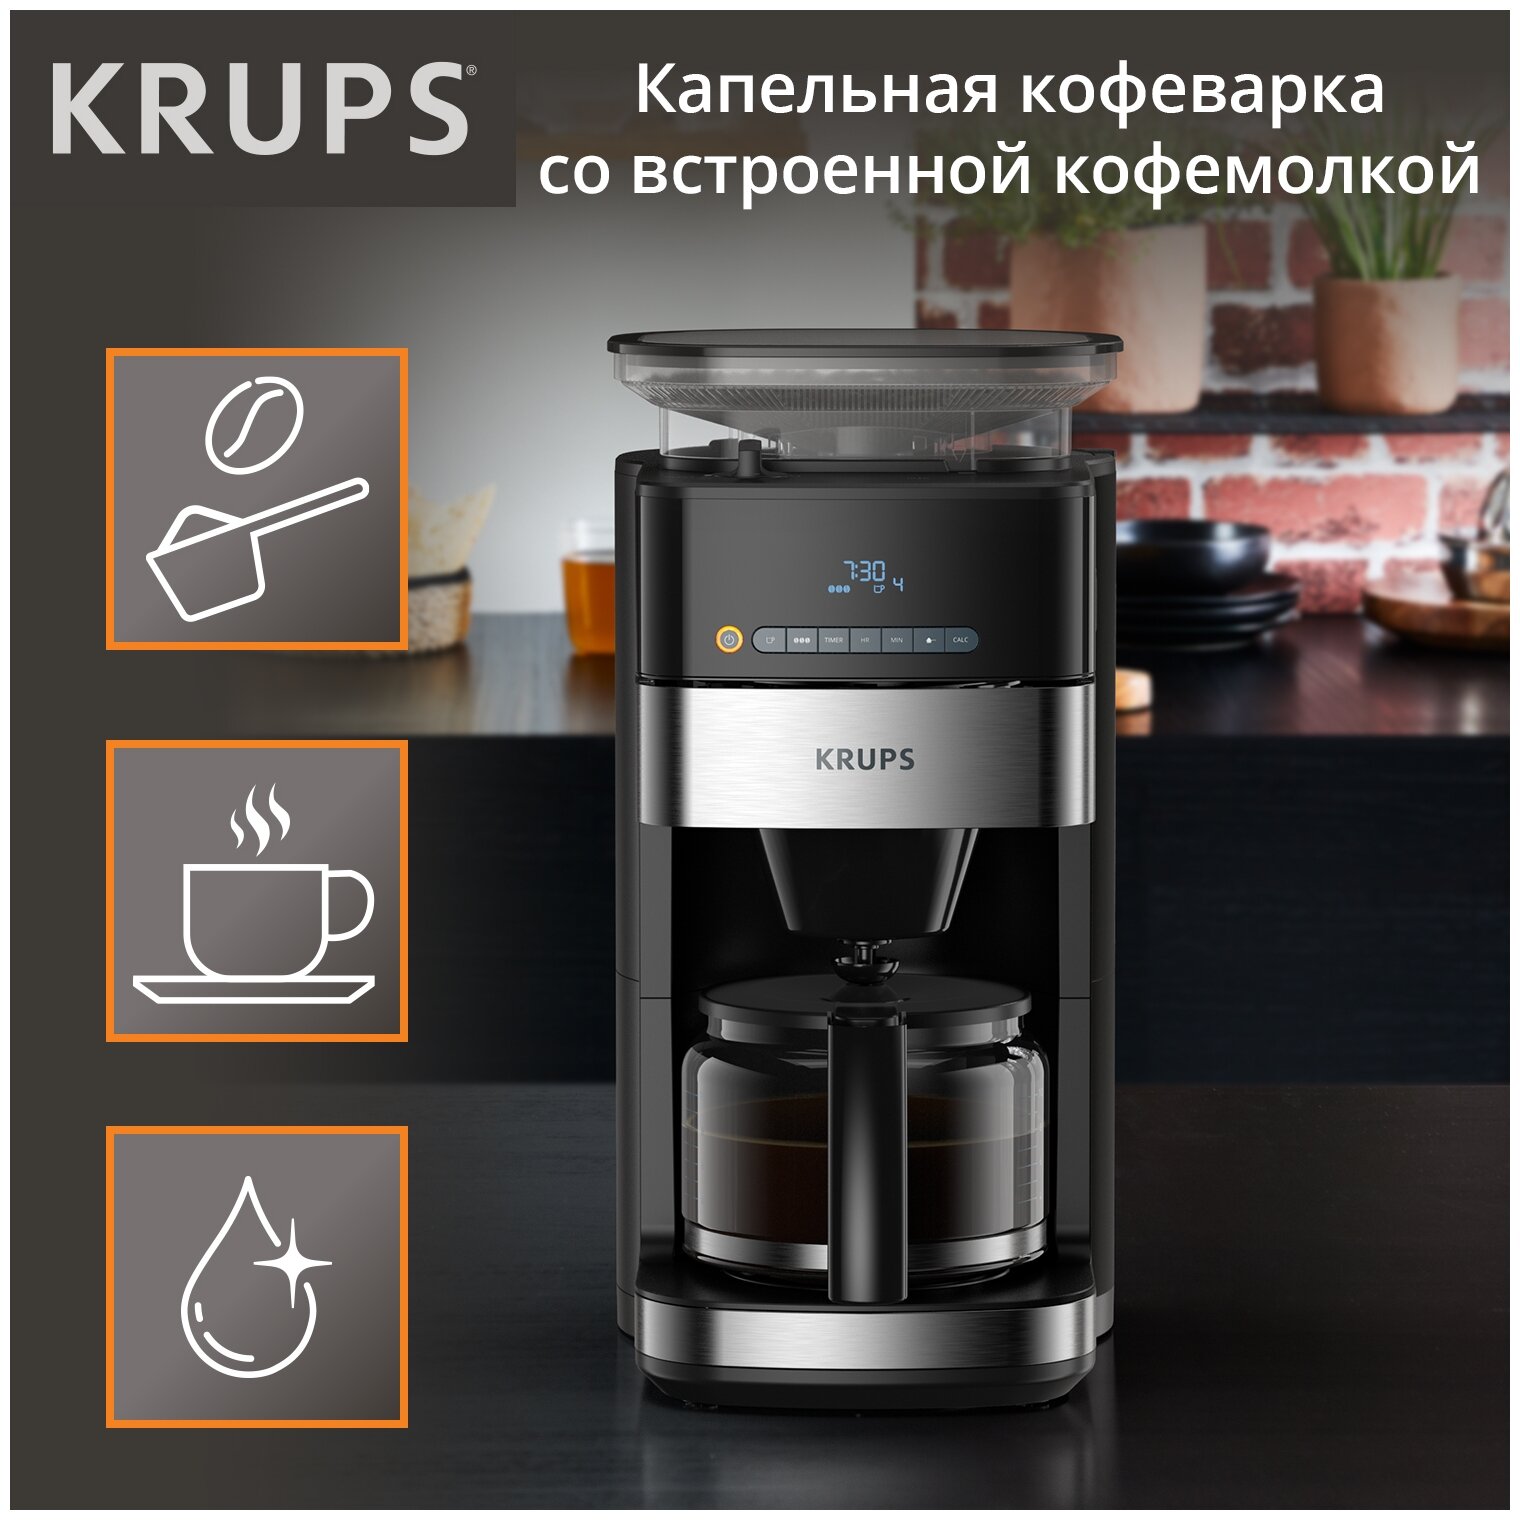 Кофеварка капельная Krups KM832810